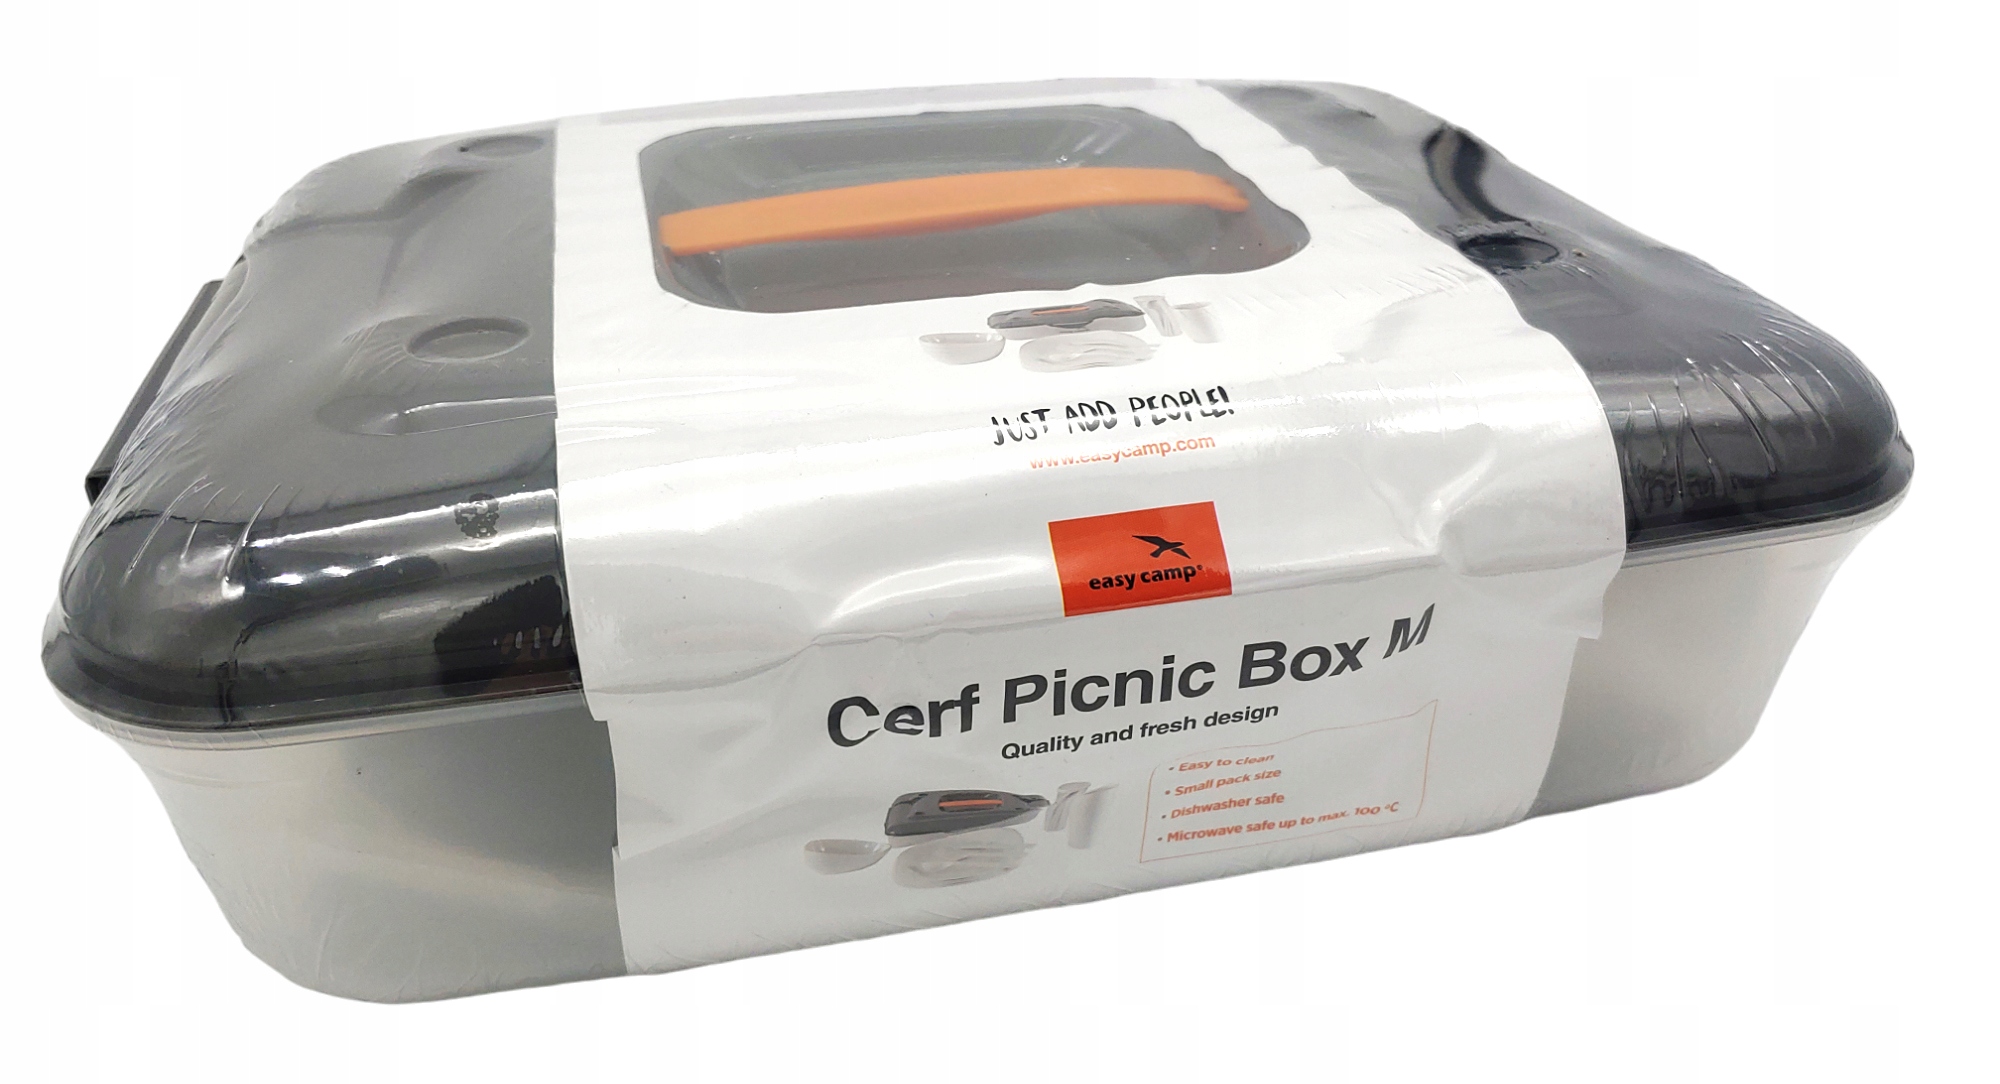 Zestaw Piknikowy Cerf Picnic Box M Walizka 24el EASY CAMP - 5709388127174 -  15057790949